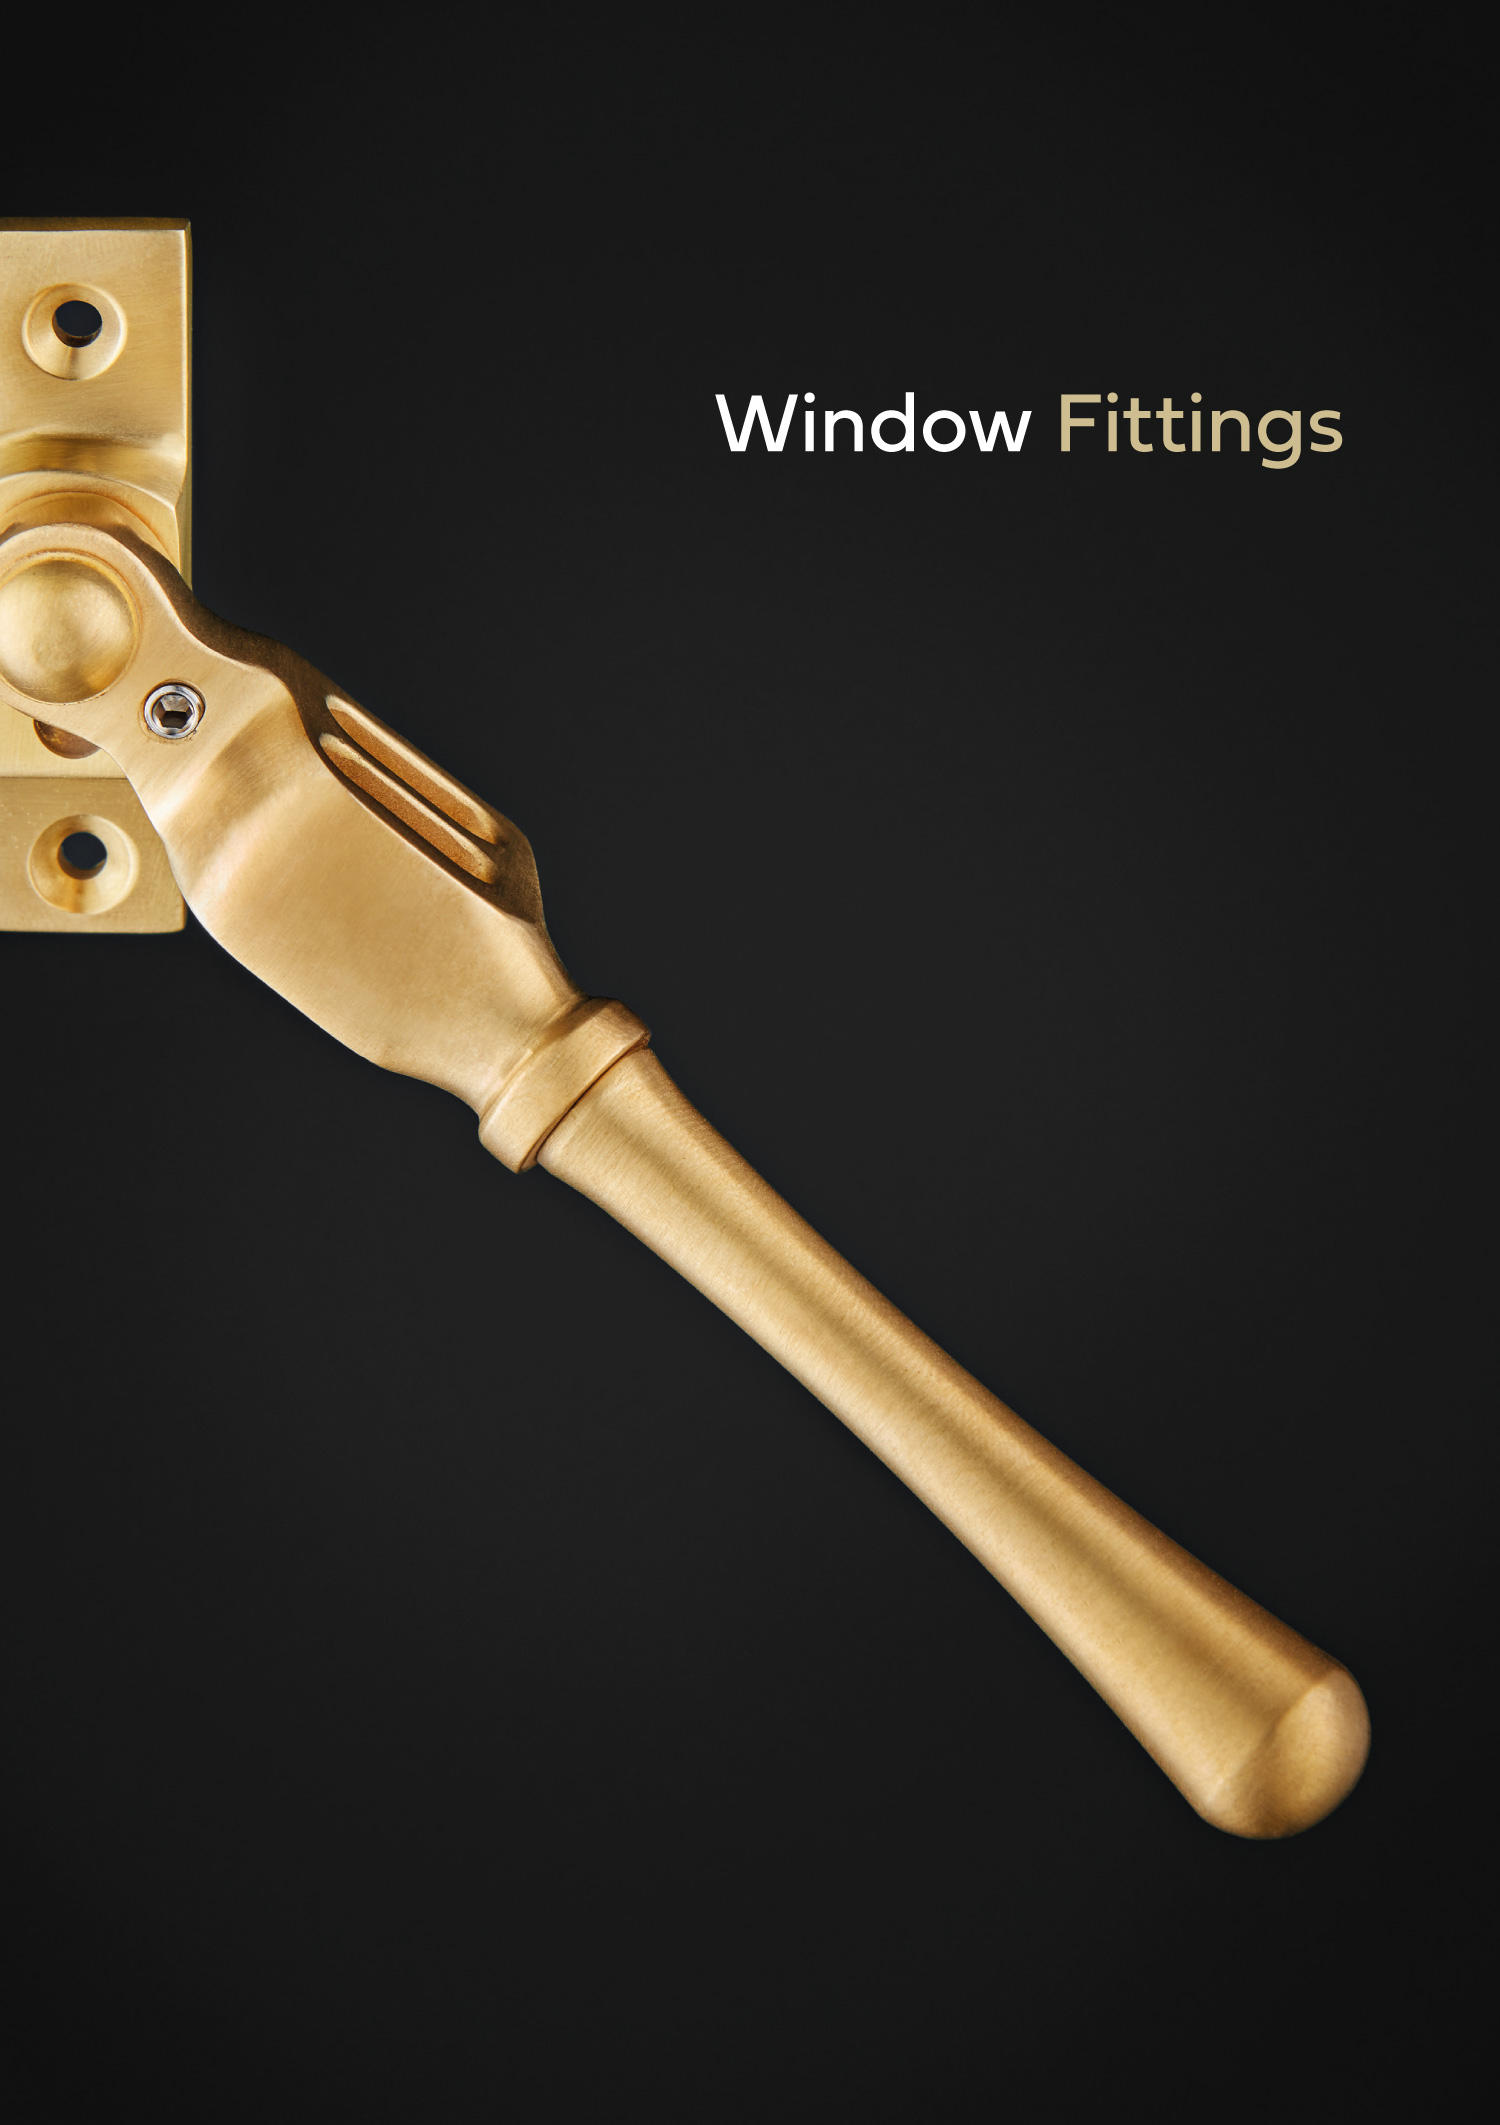 Window fittings brochure by Croft